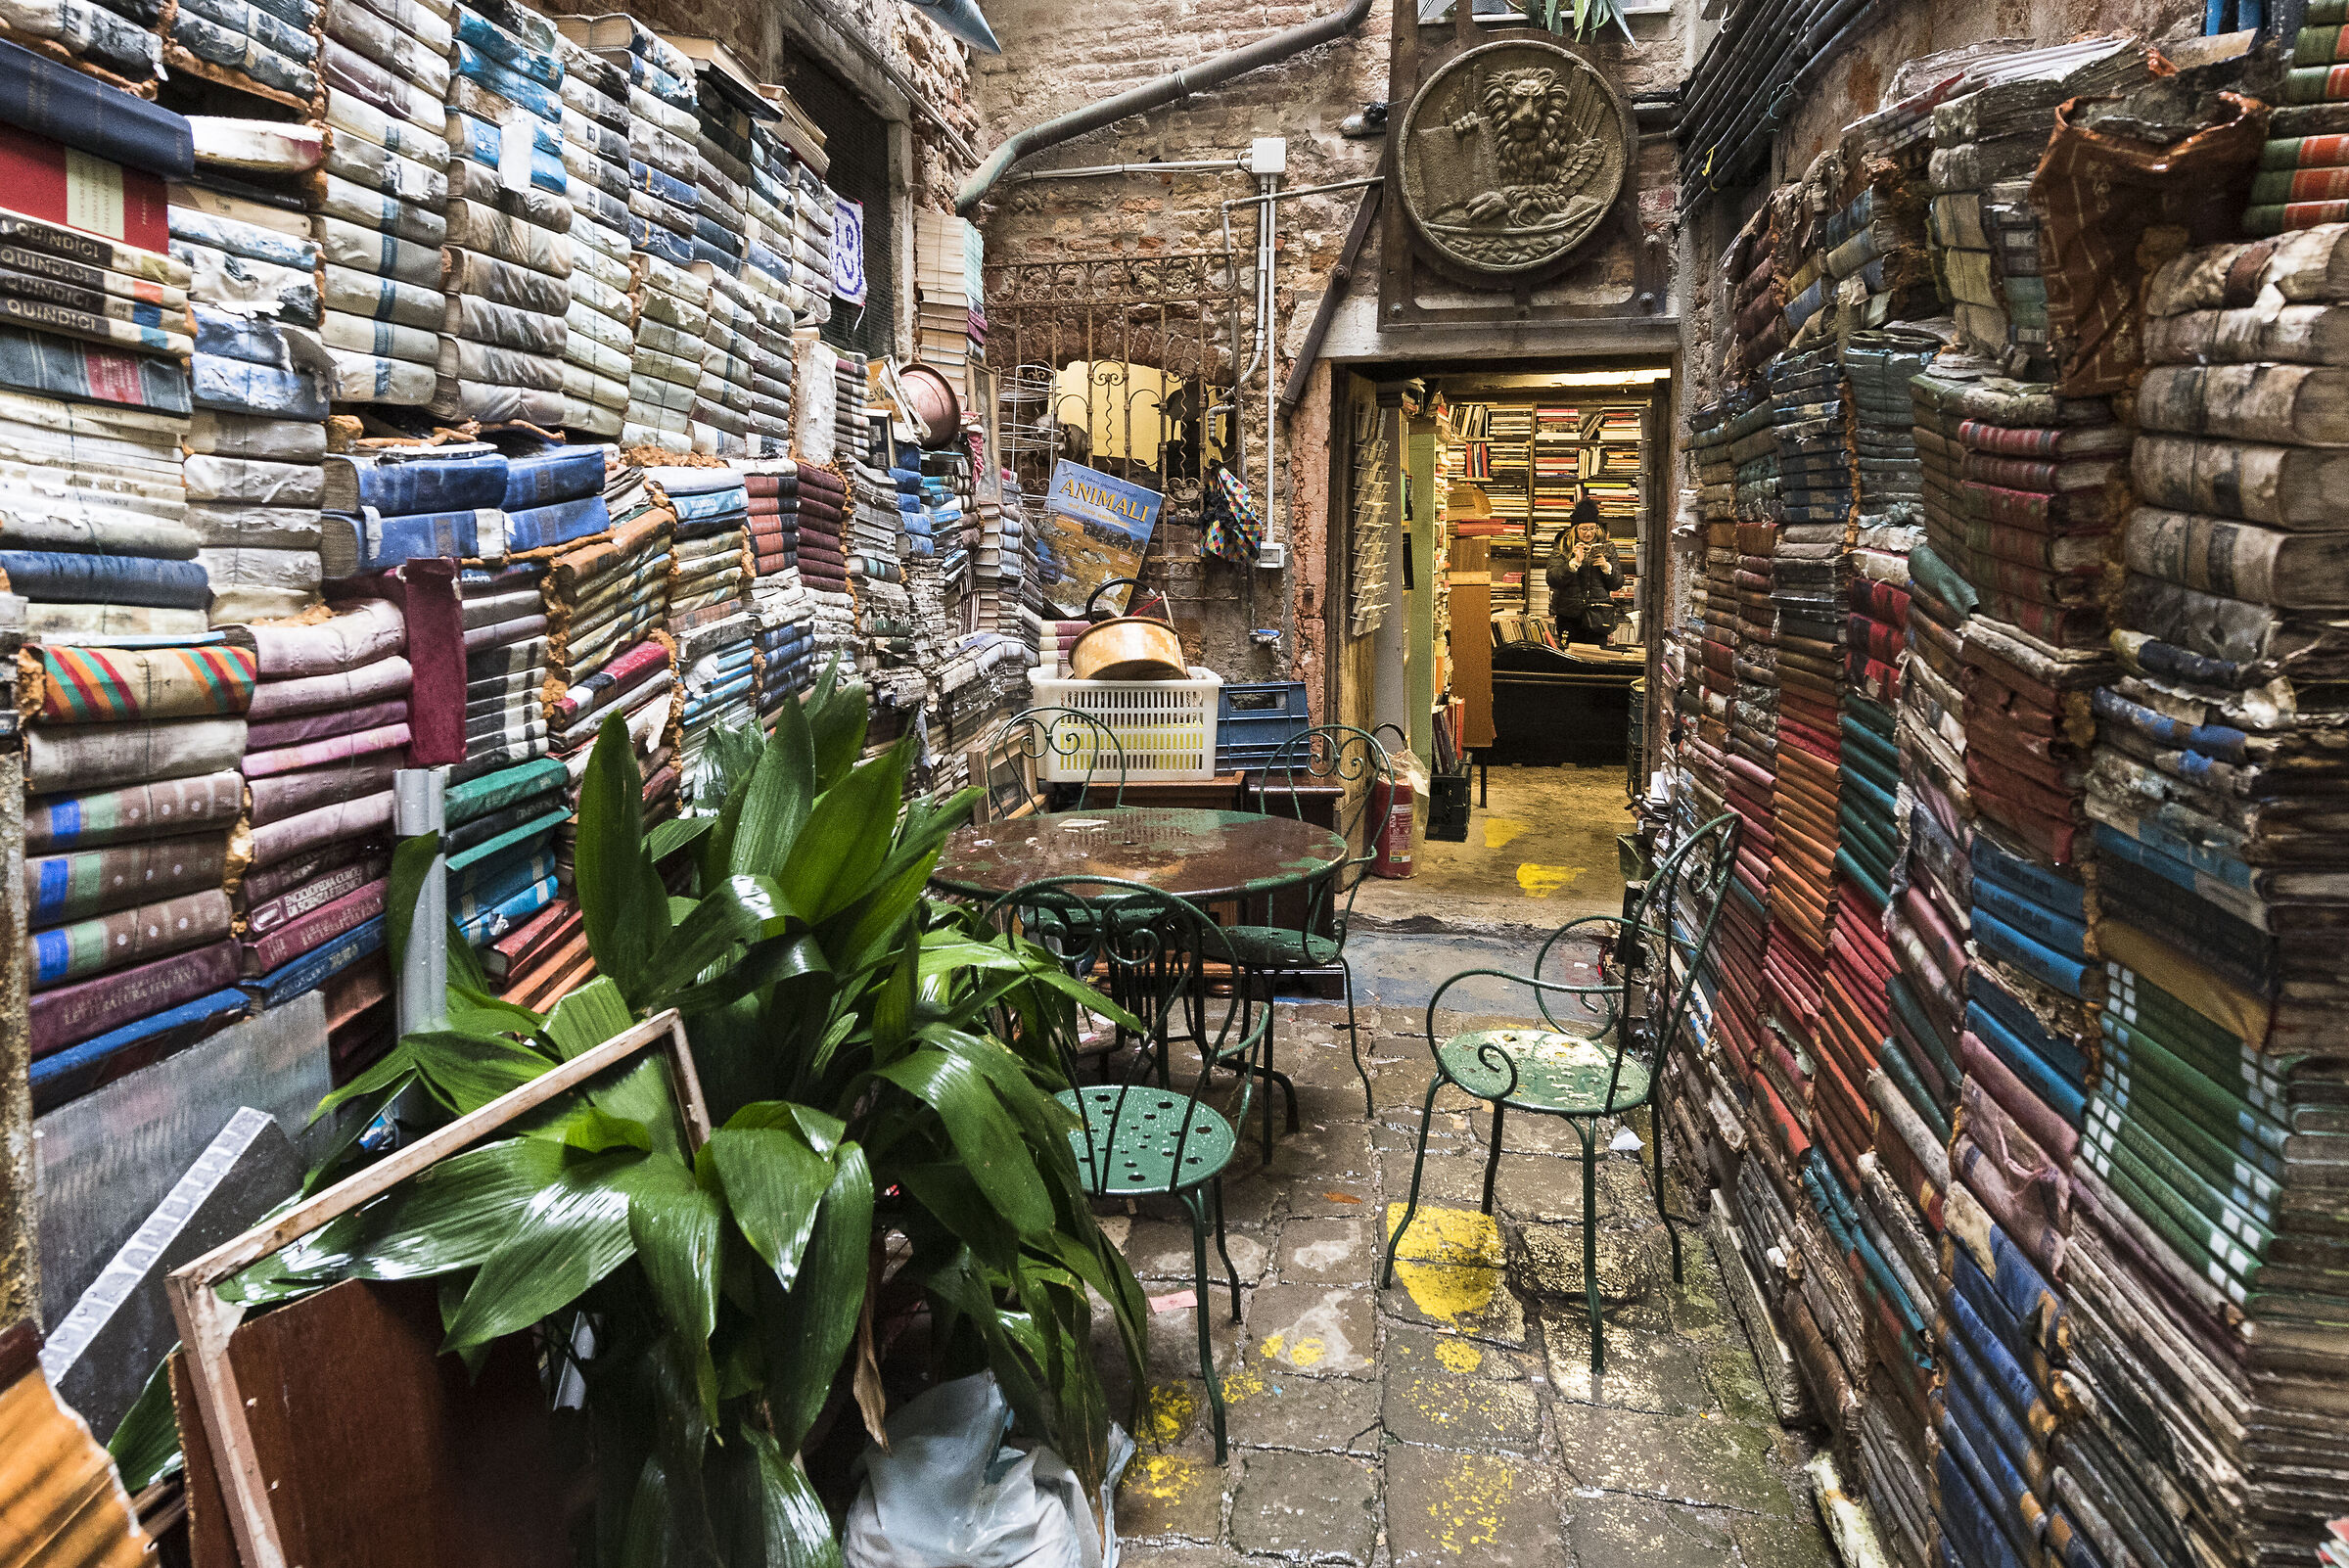 A bookshop in Venice...